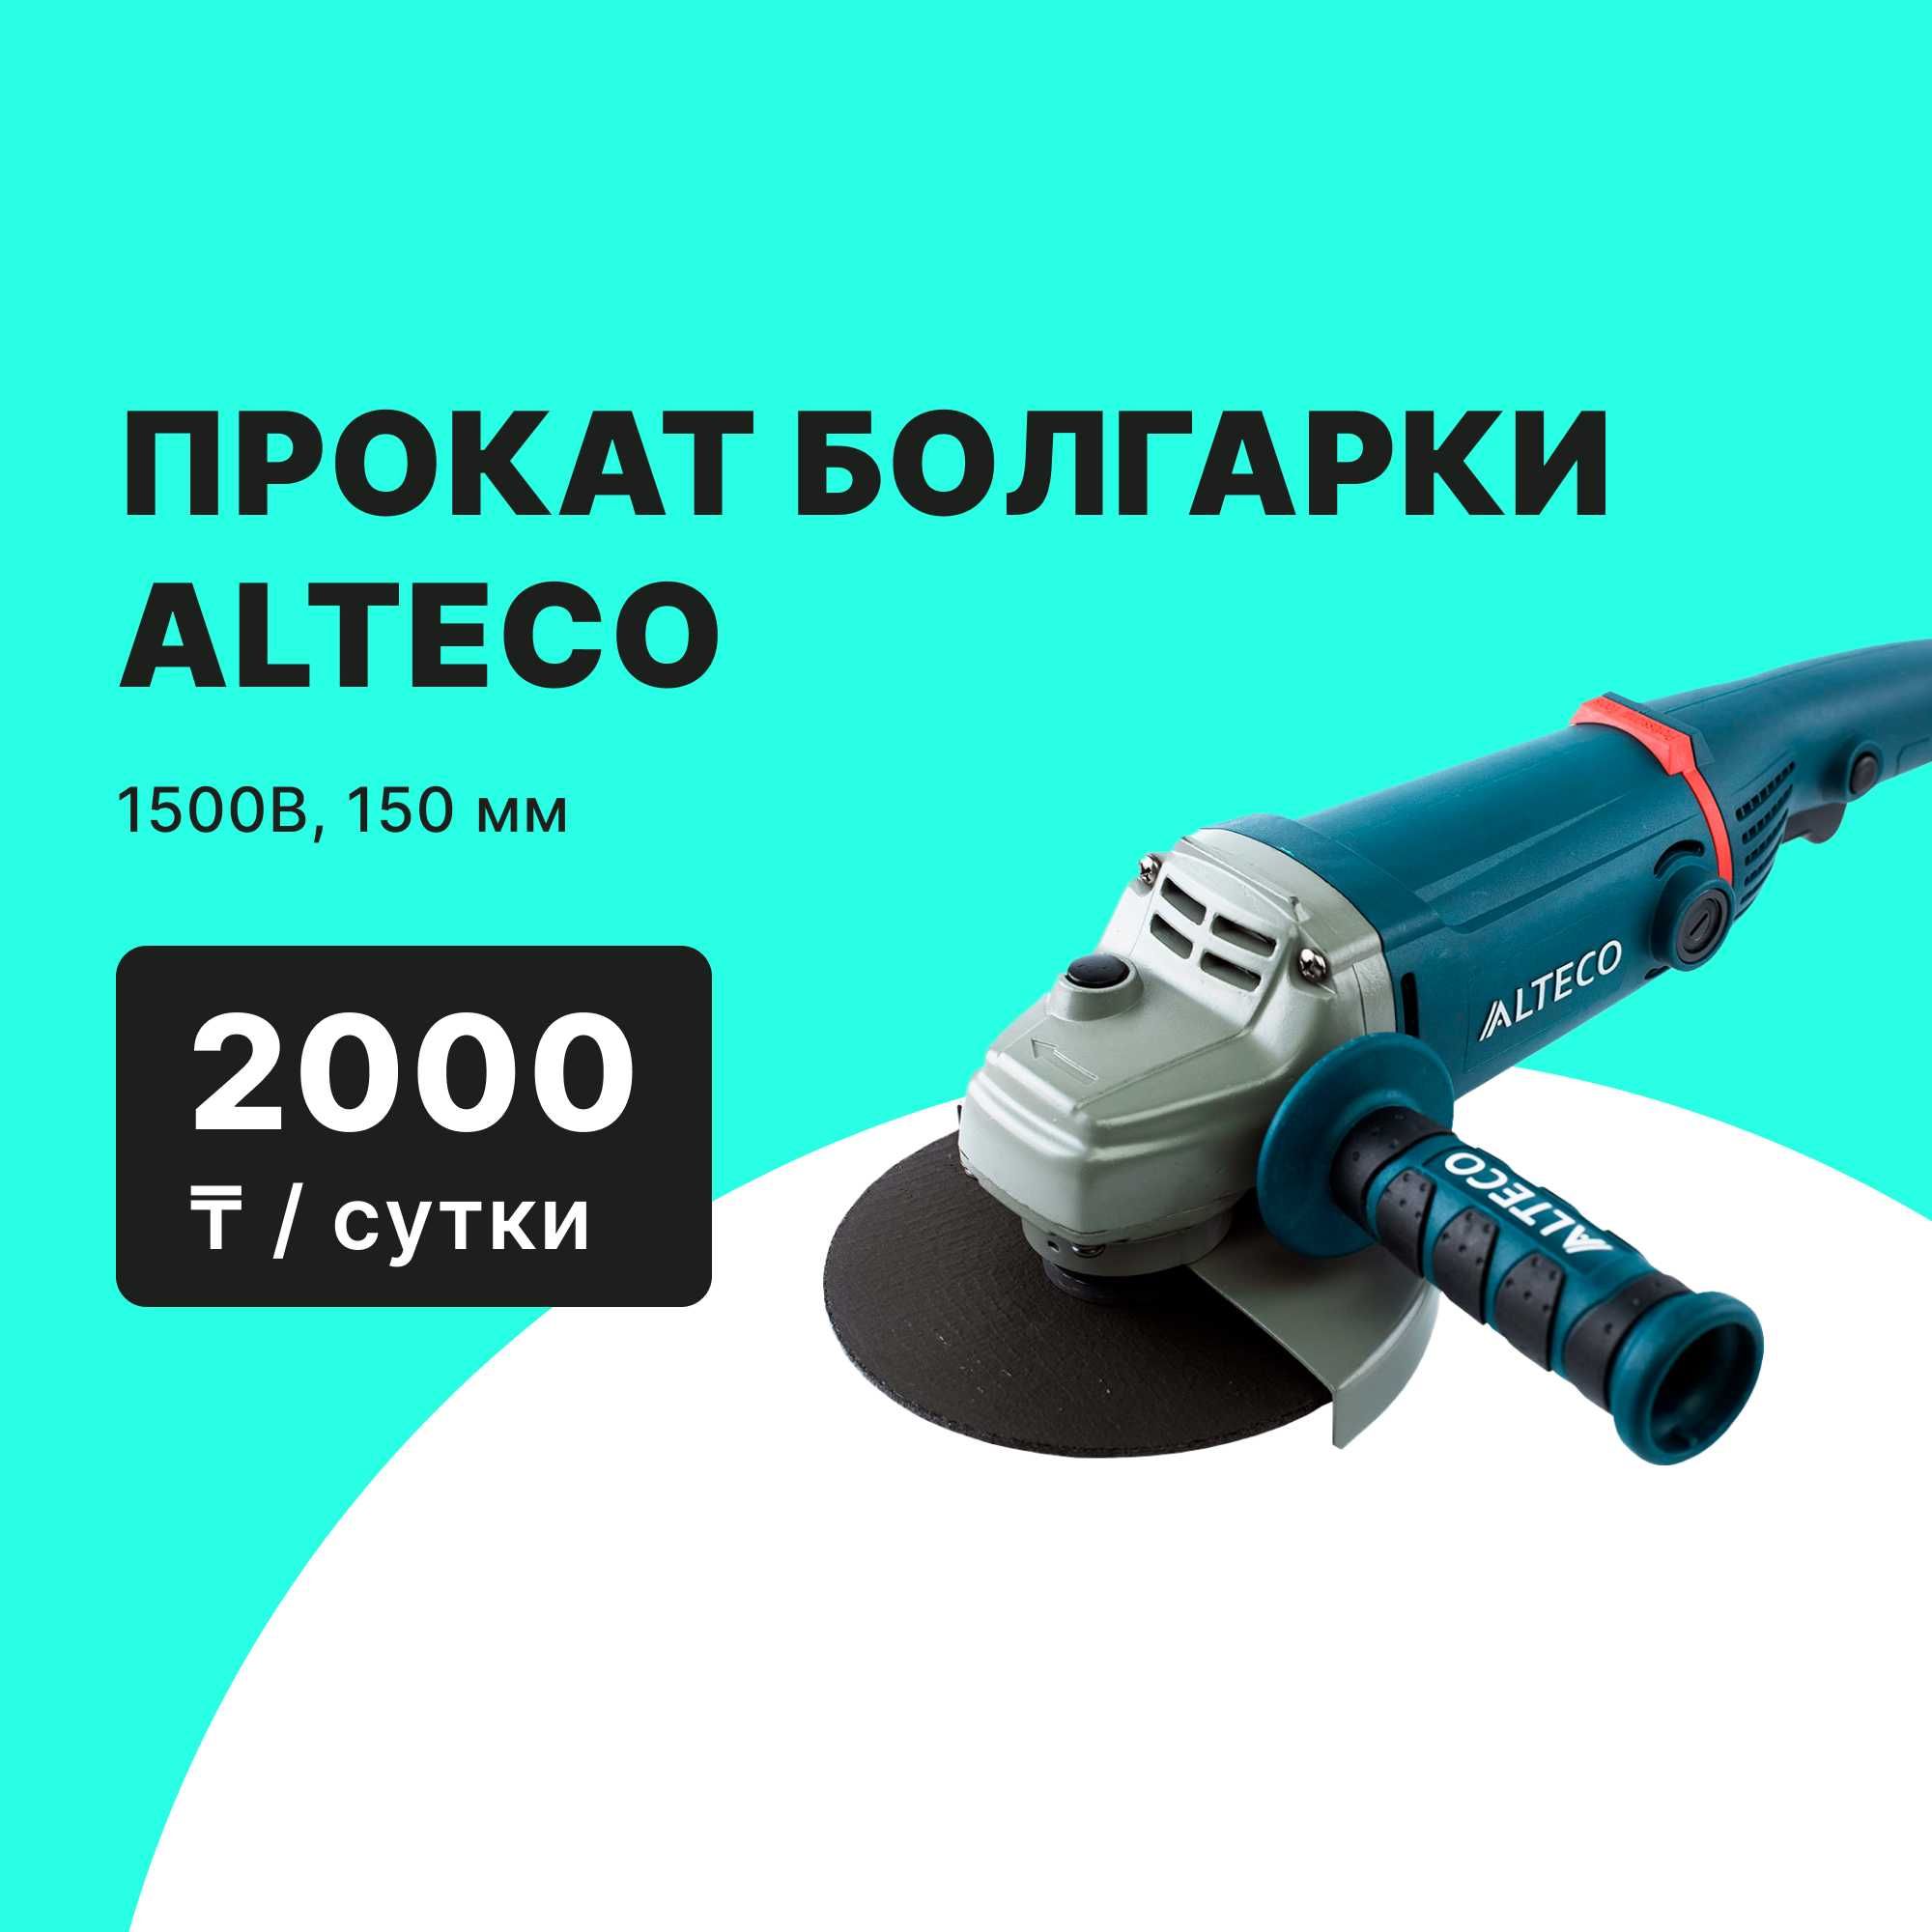 Прокат Виброплита Alteco C100TL с баком от 10000 тг